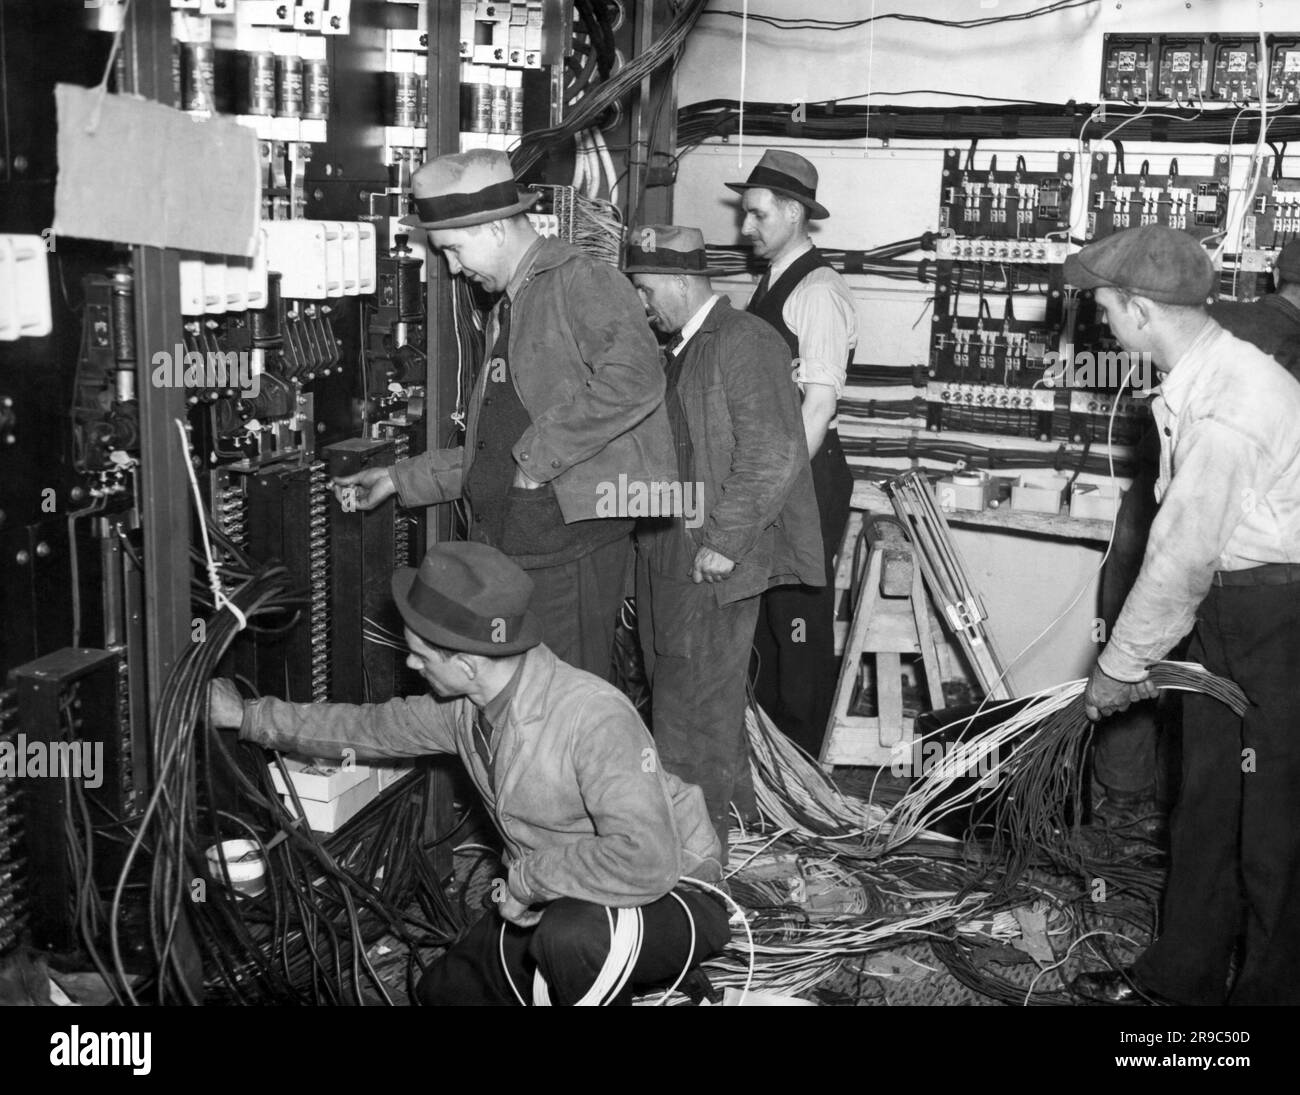 New York, New York: 1936 la salle de contrôle des opérations pour le nouveau panneau électrique de Wrigley's Spearmint Gum sur Times Square. C'est un bloc complet entre 44th et 45th Street sur Broadway. Ici, l'équipage travaille avec une partie des sept tonnes et demie d'équipement électrique. Banque D'Images